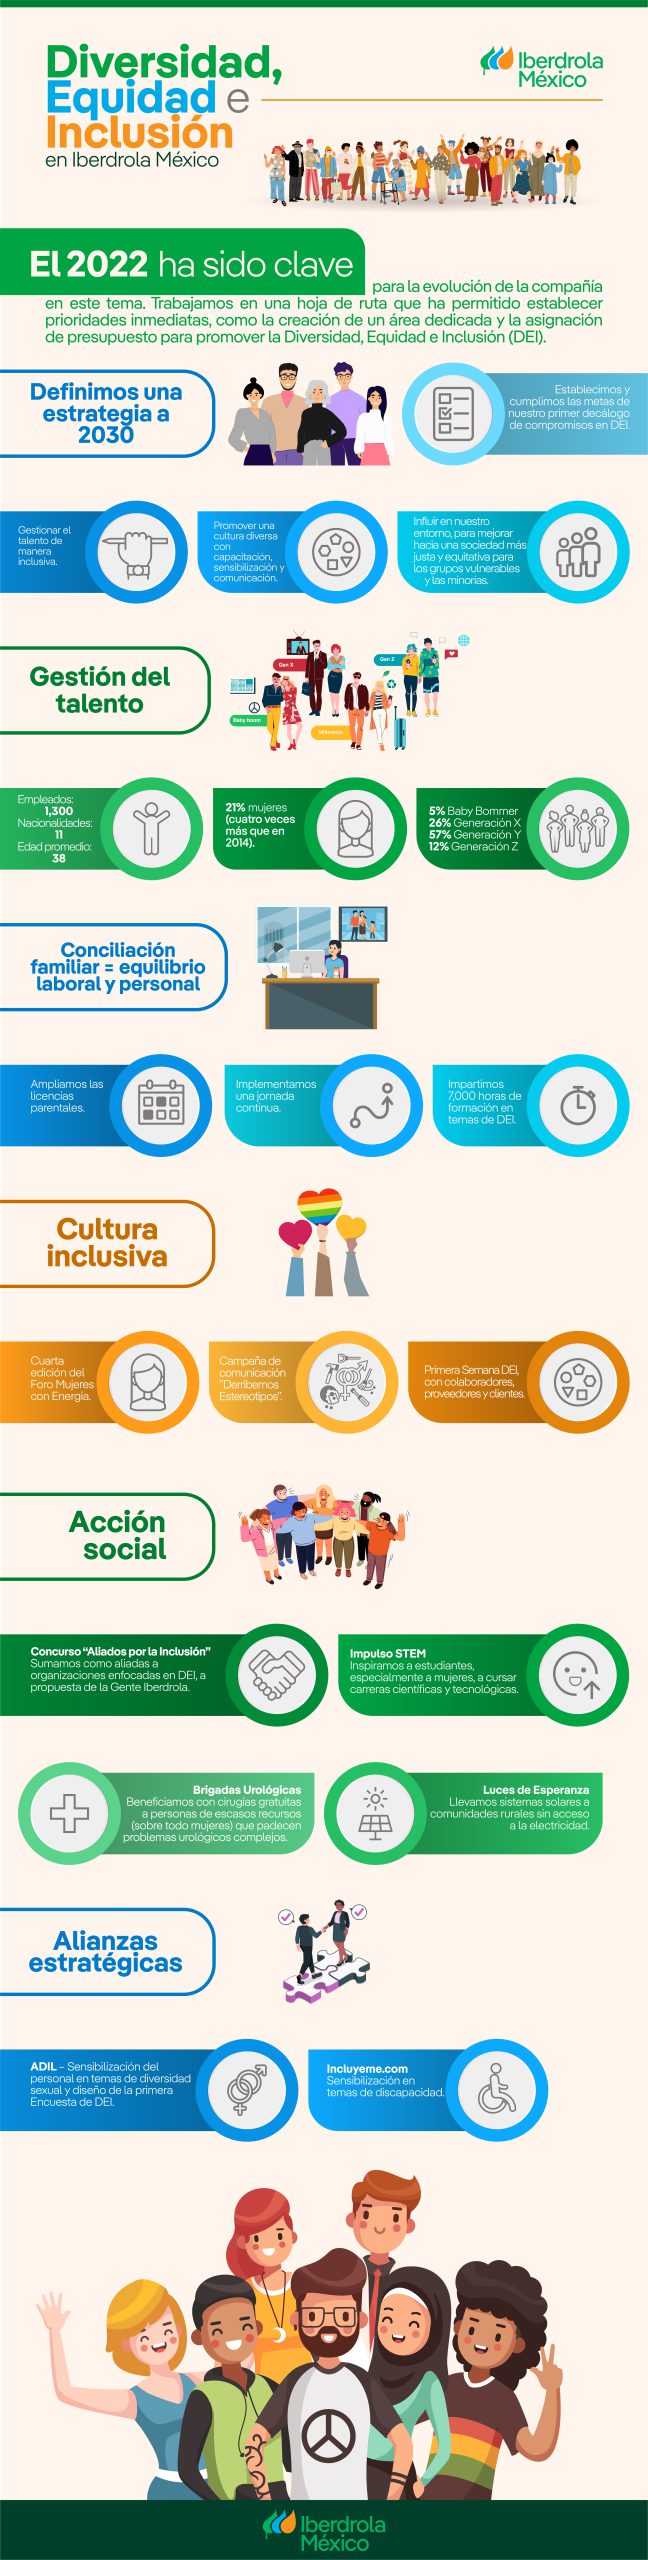 Infografía que describe las acciones y resultados en materia de diversidad, equidad e inclusión en 2022, para una nueva hoja de ruta en las nuevas metas.